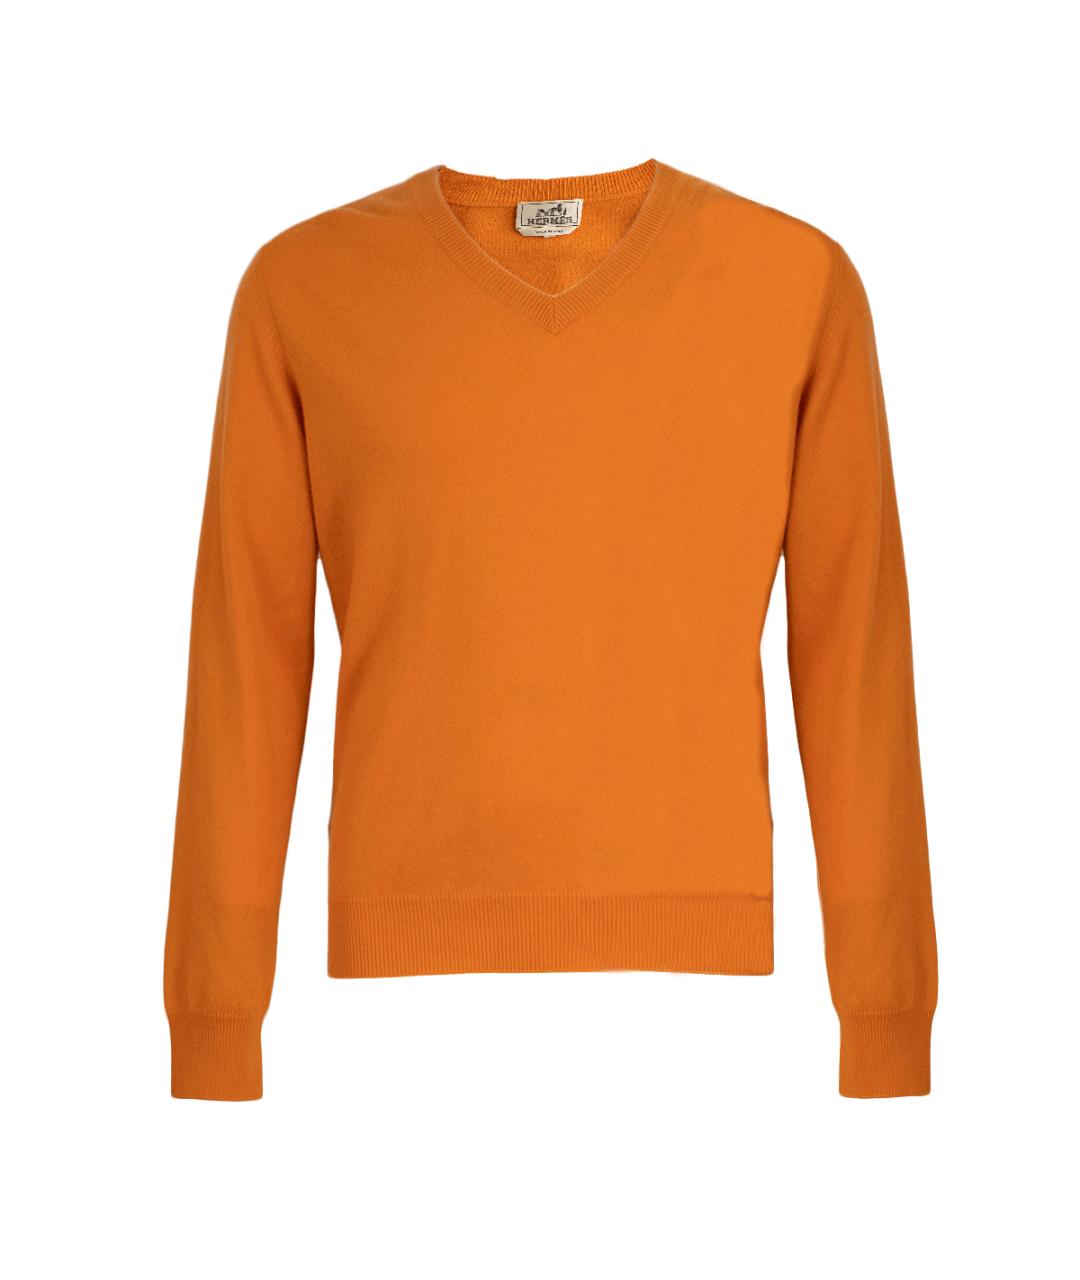 HERMES Оранжевый кашемировый джемпер / свитер, фото 1